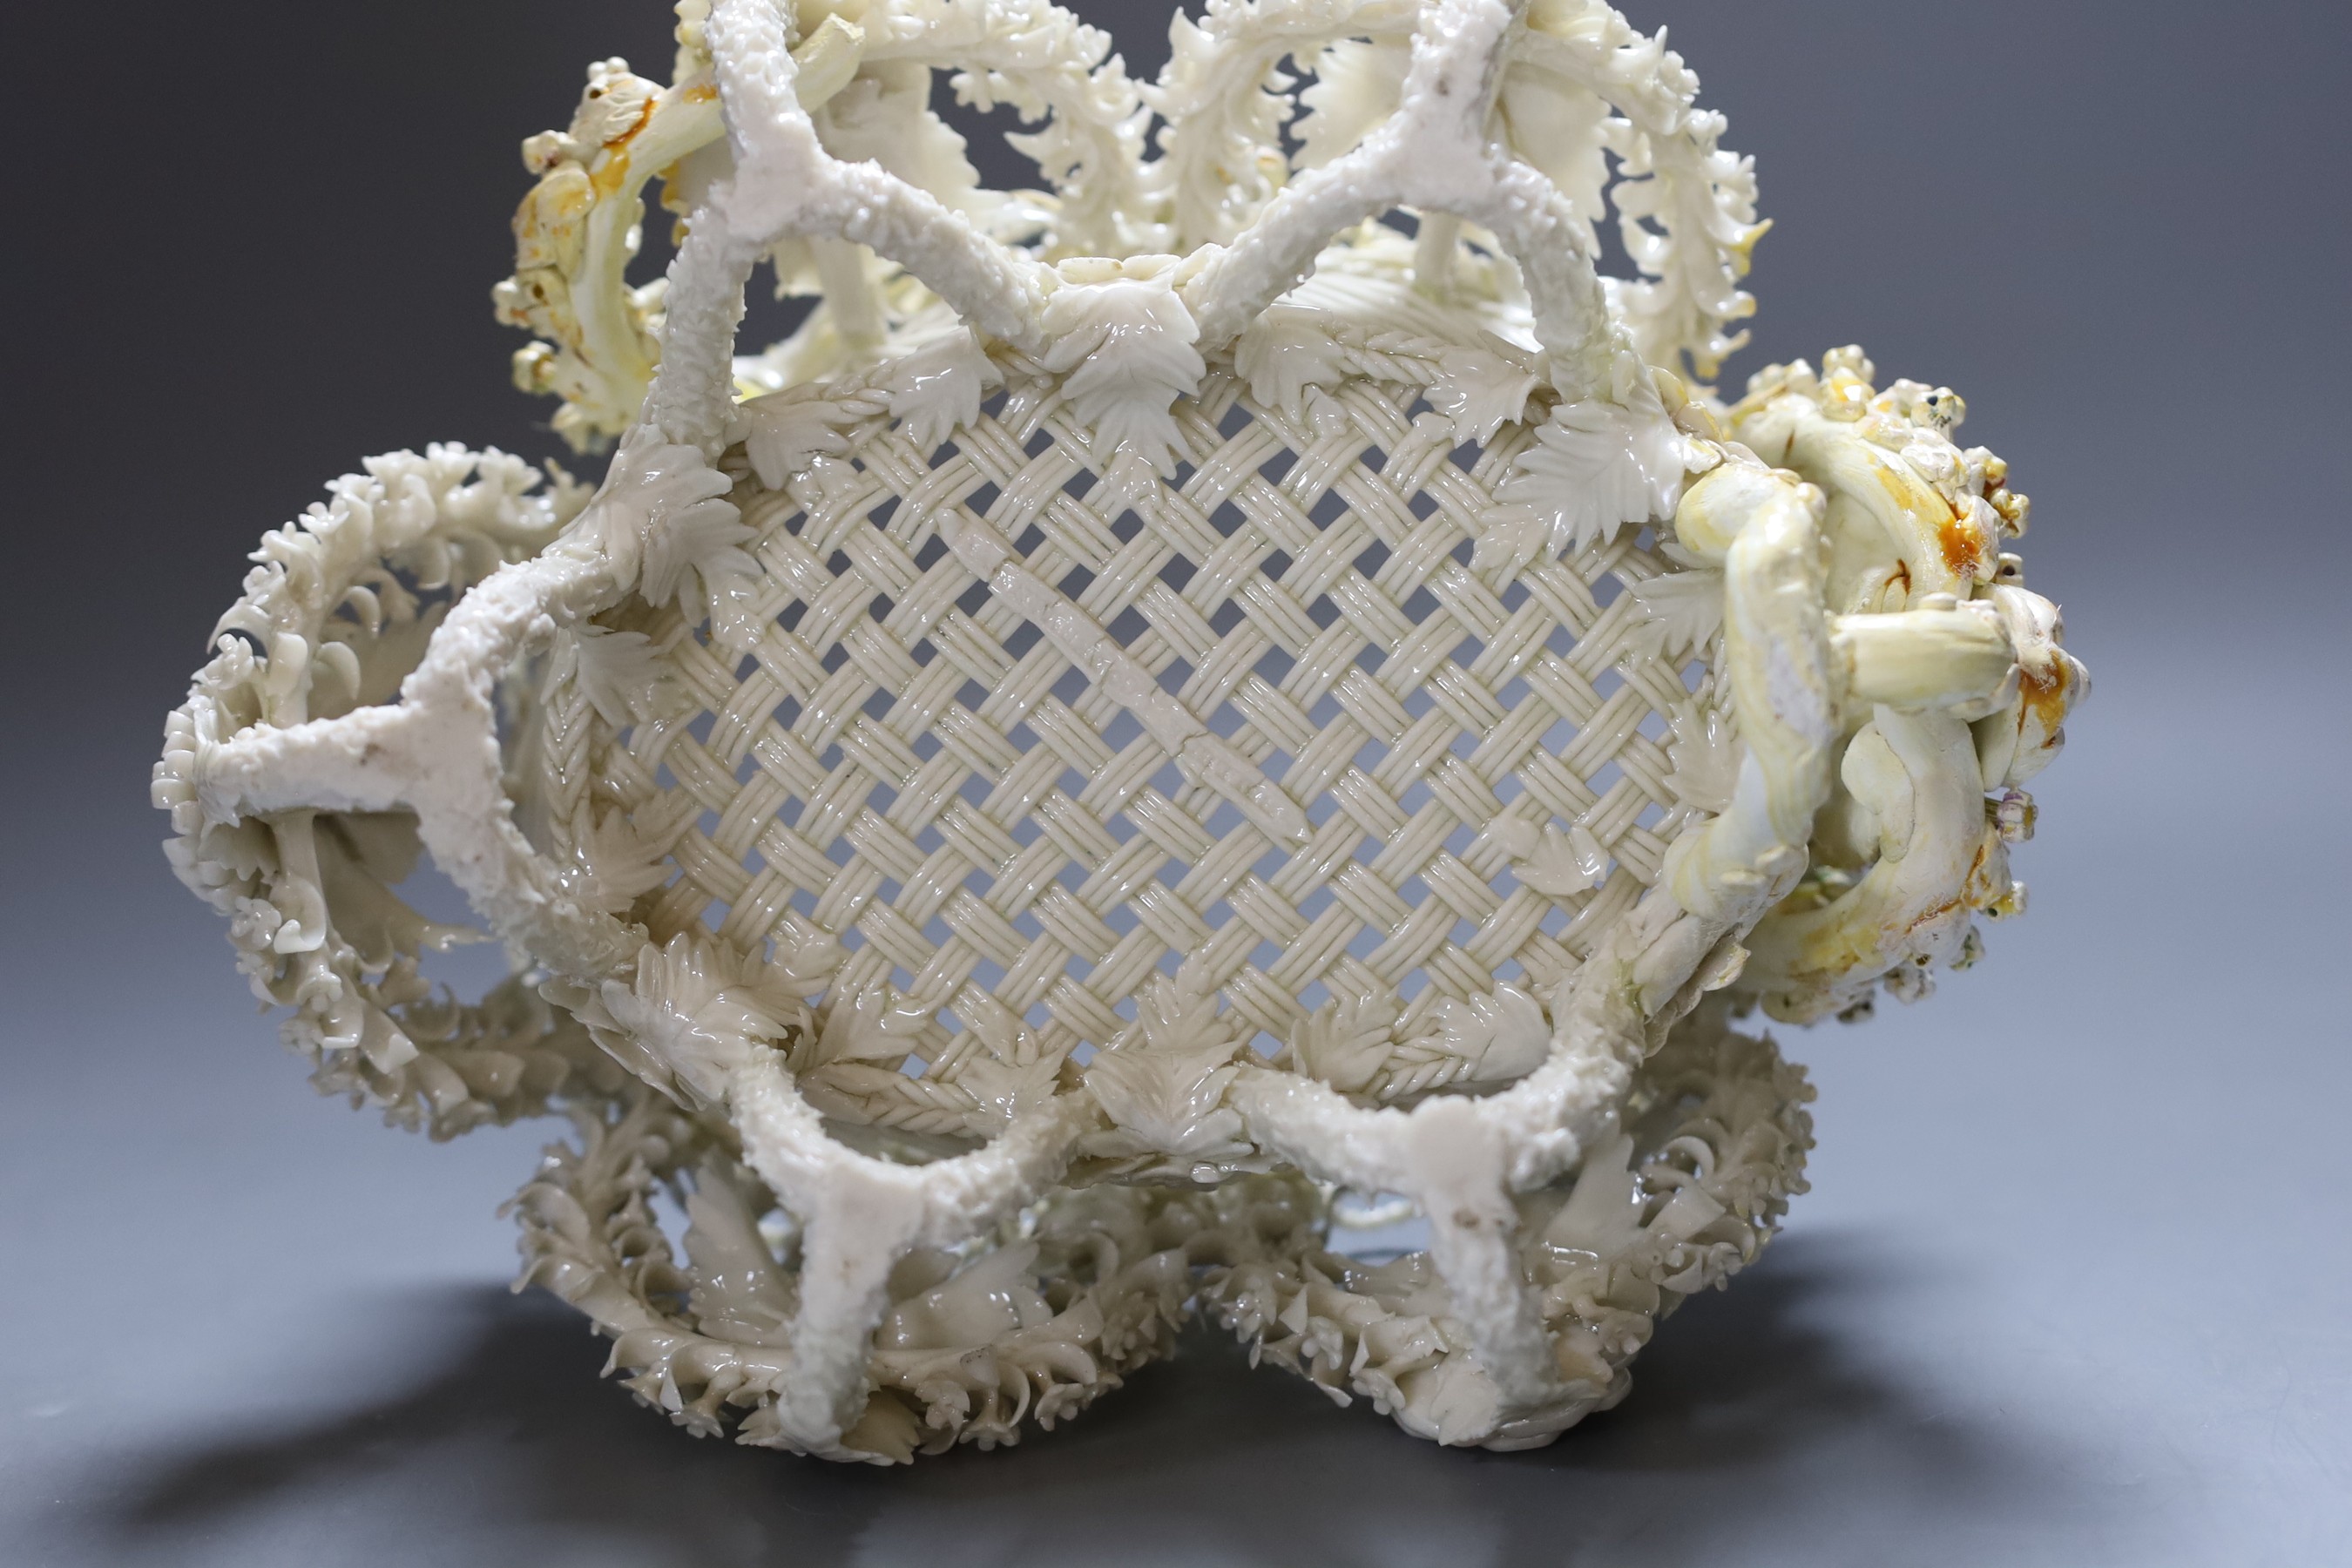 A Belleek floral encrusted basket (restored), 24cm